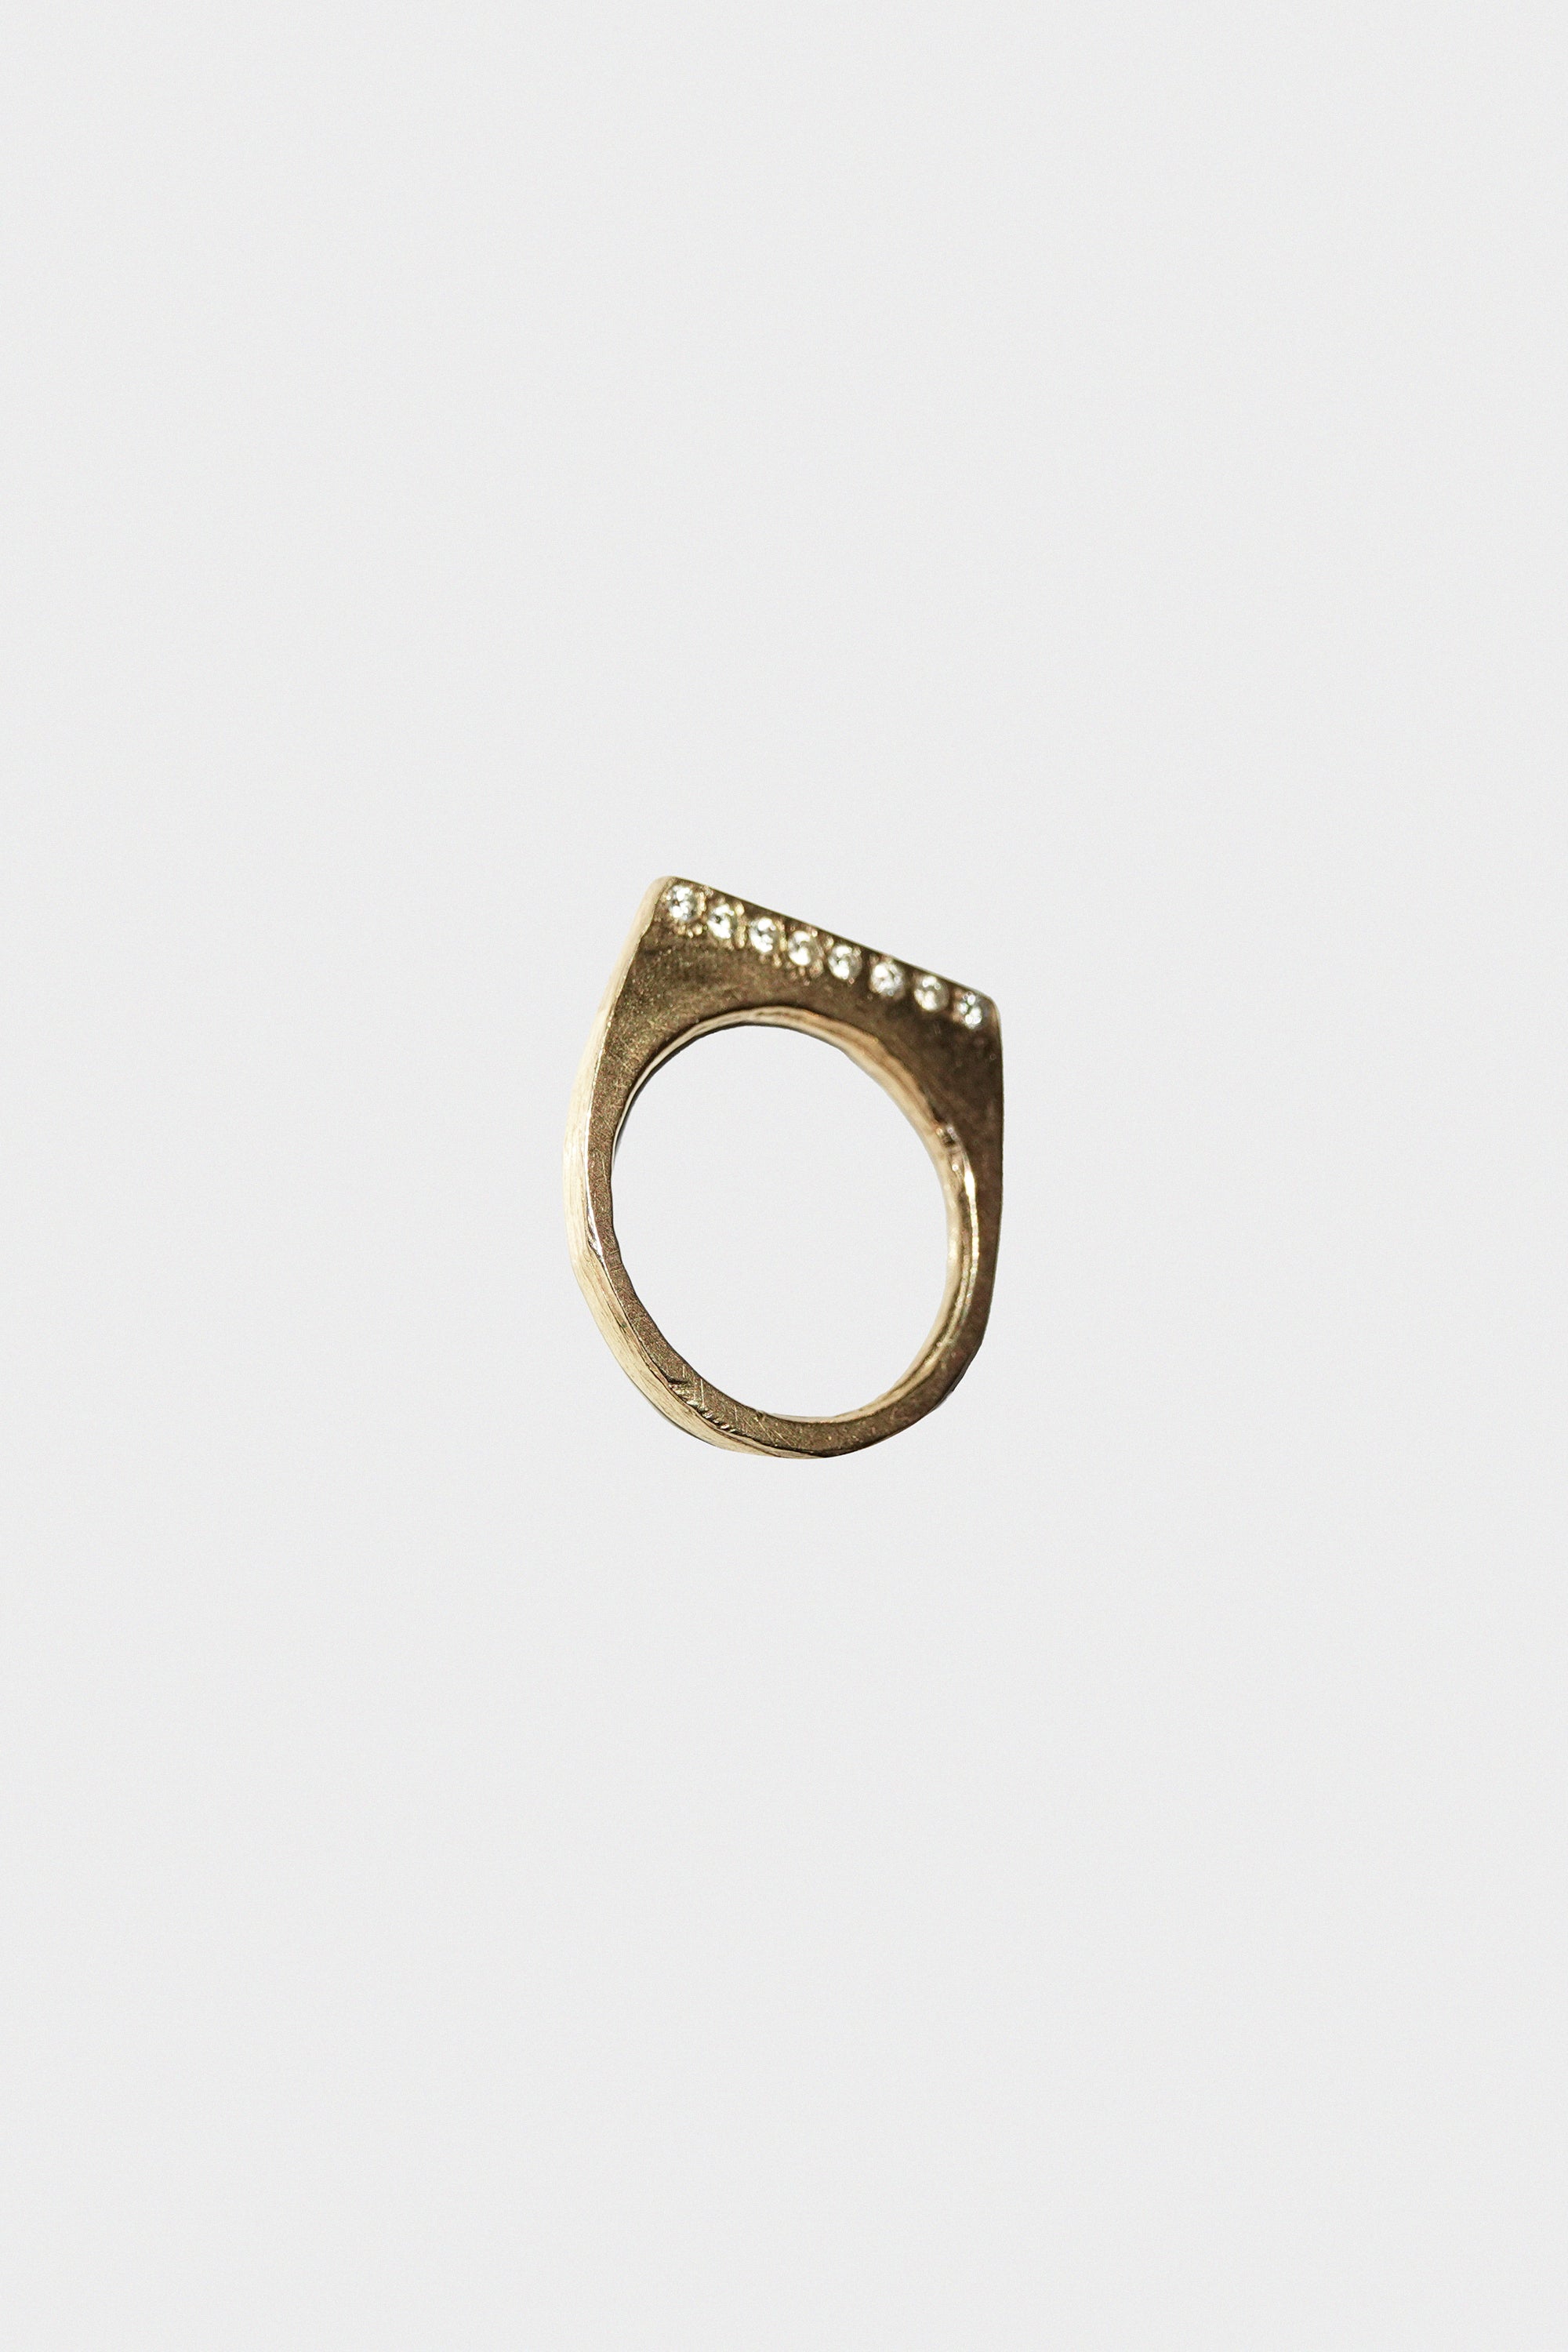 Topo Strata Ring in 14k Gold